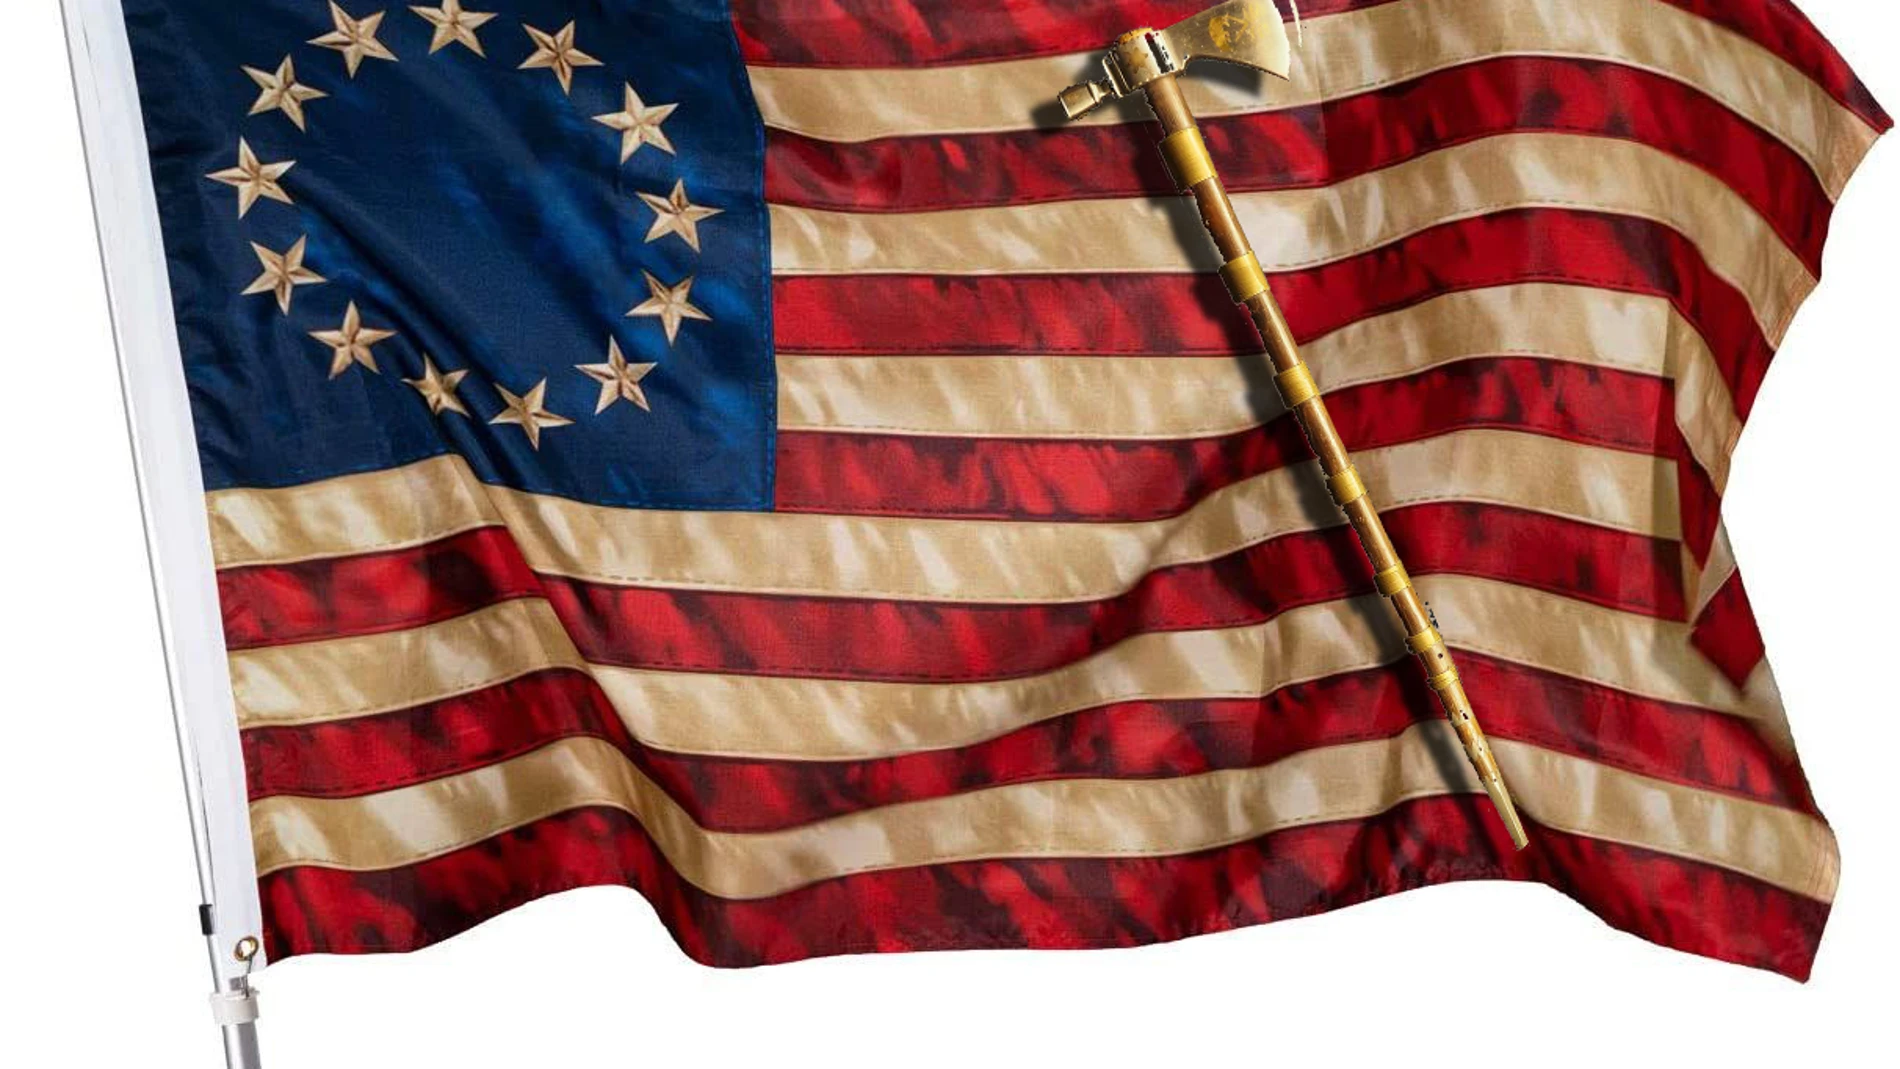 La bandera inicial de los Estados Unidos y un hacha tomahawk